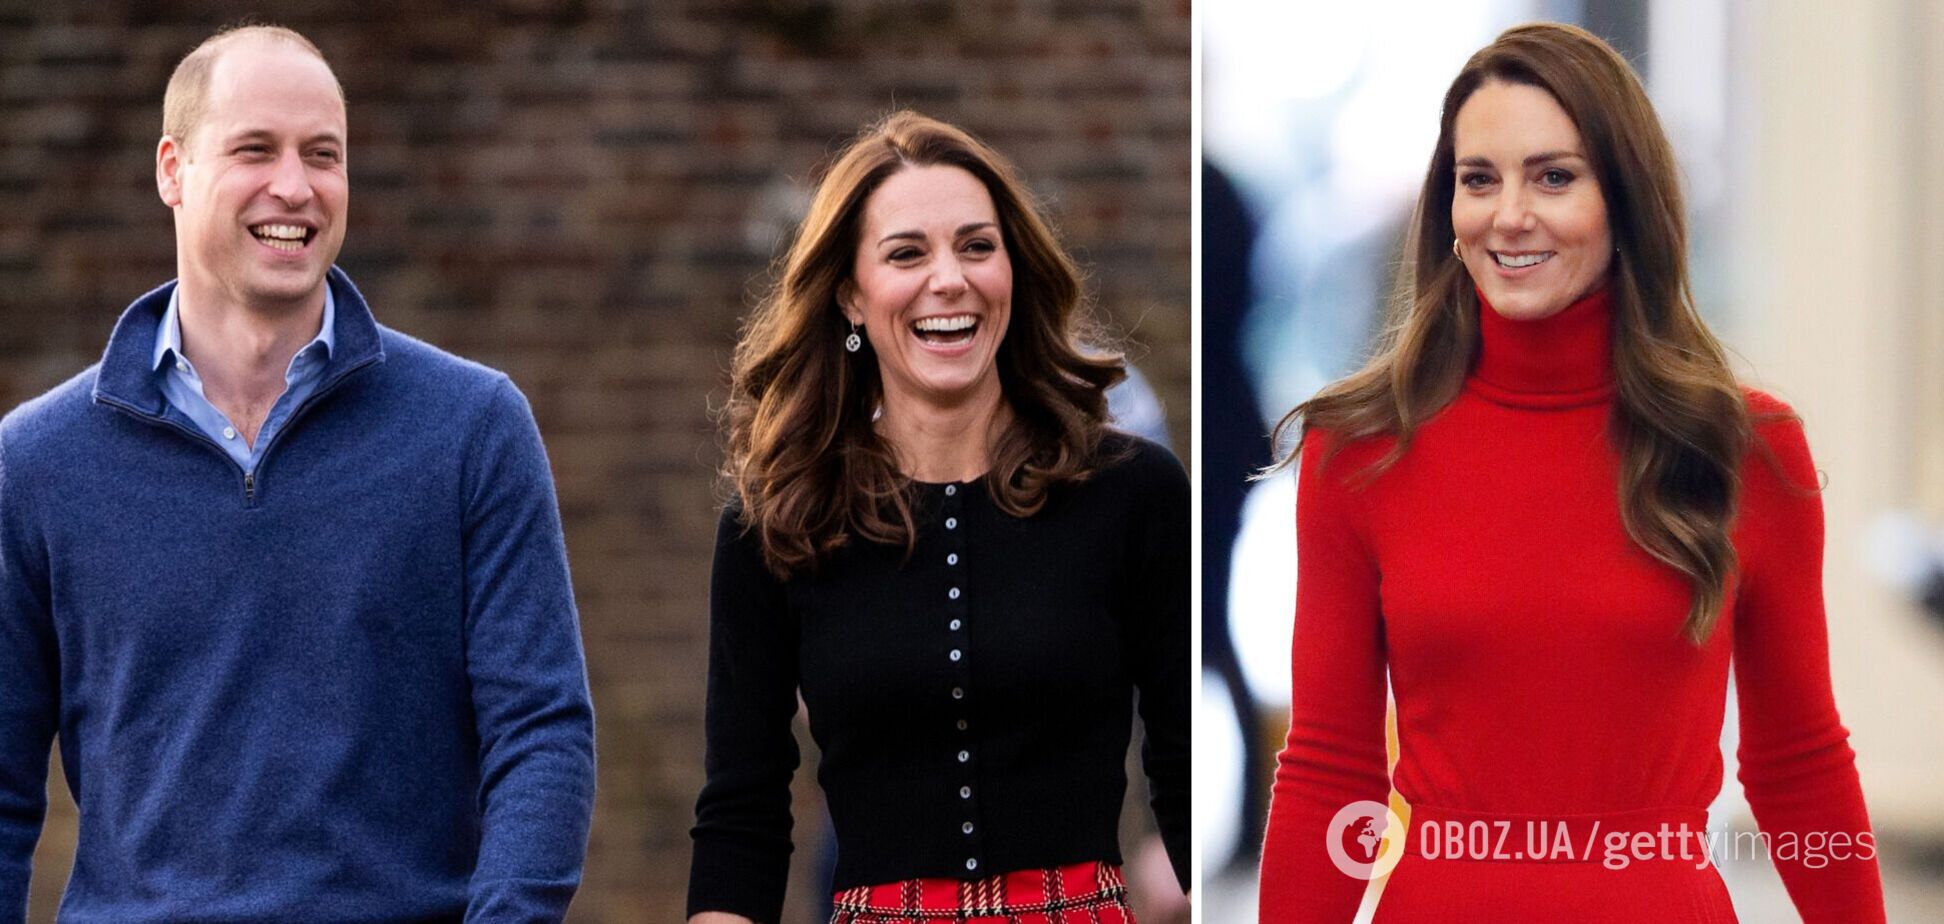 Видео с Кейт Миддлтон на улице выложили в сеть: принцесса Уэльская имела 'невероятно счастливый' вид